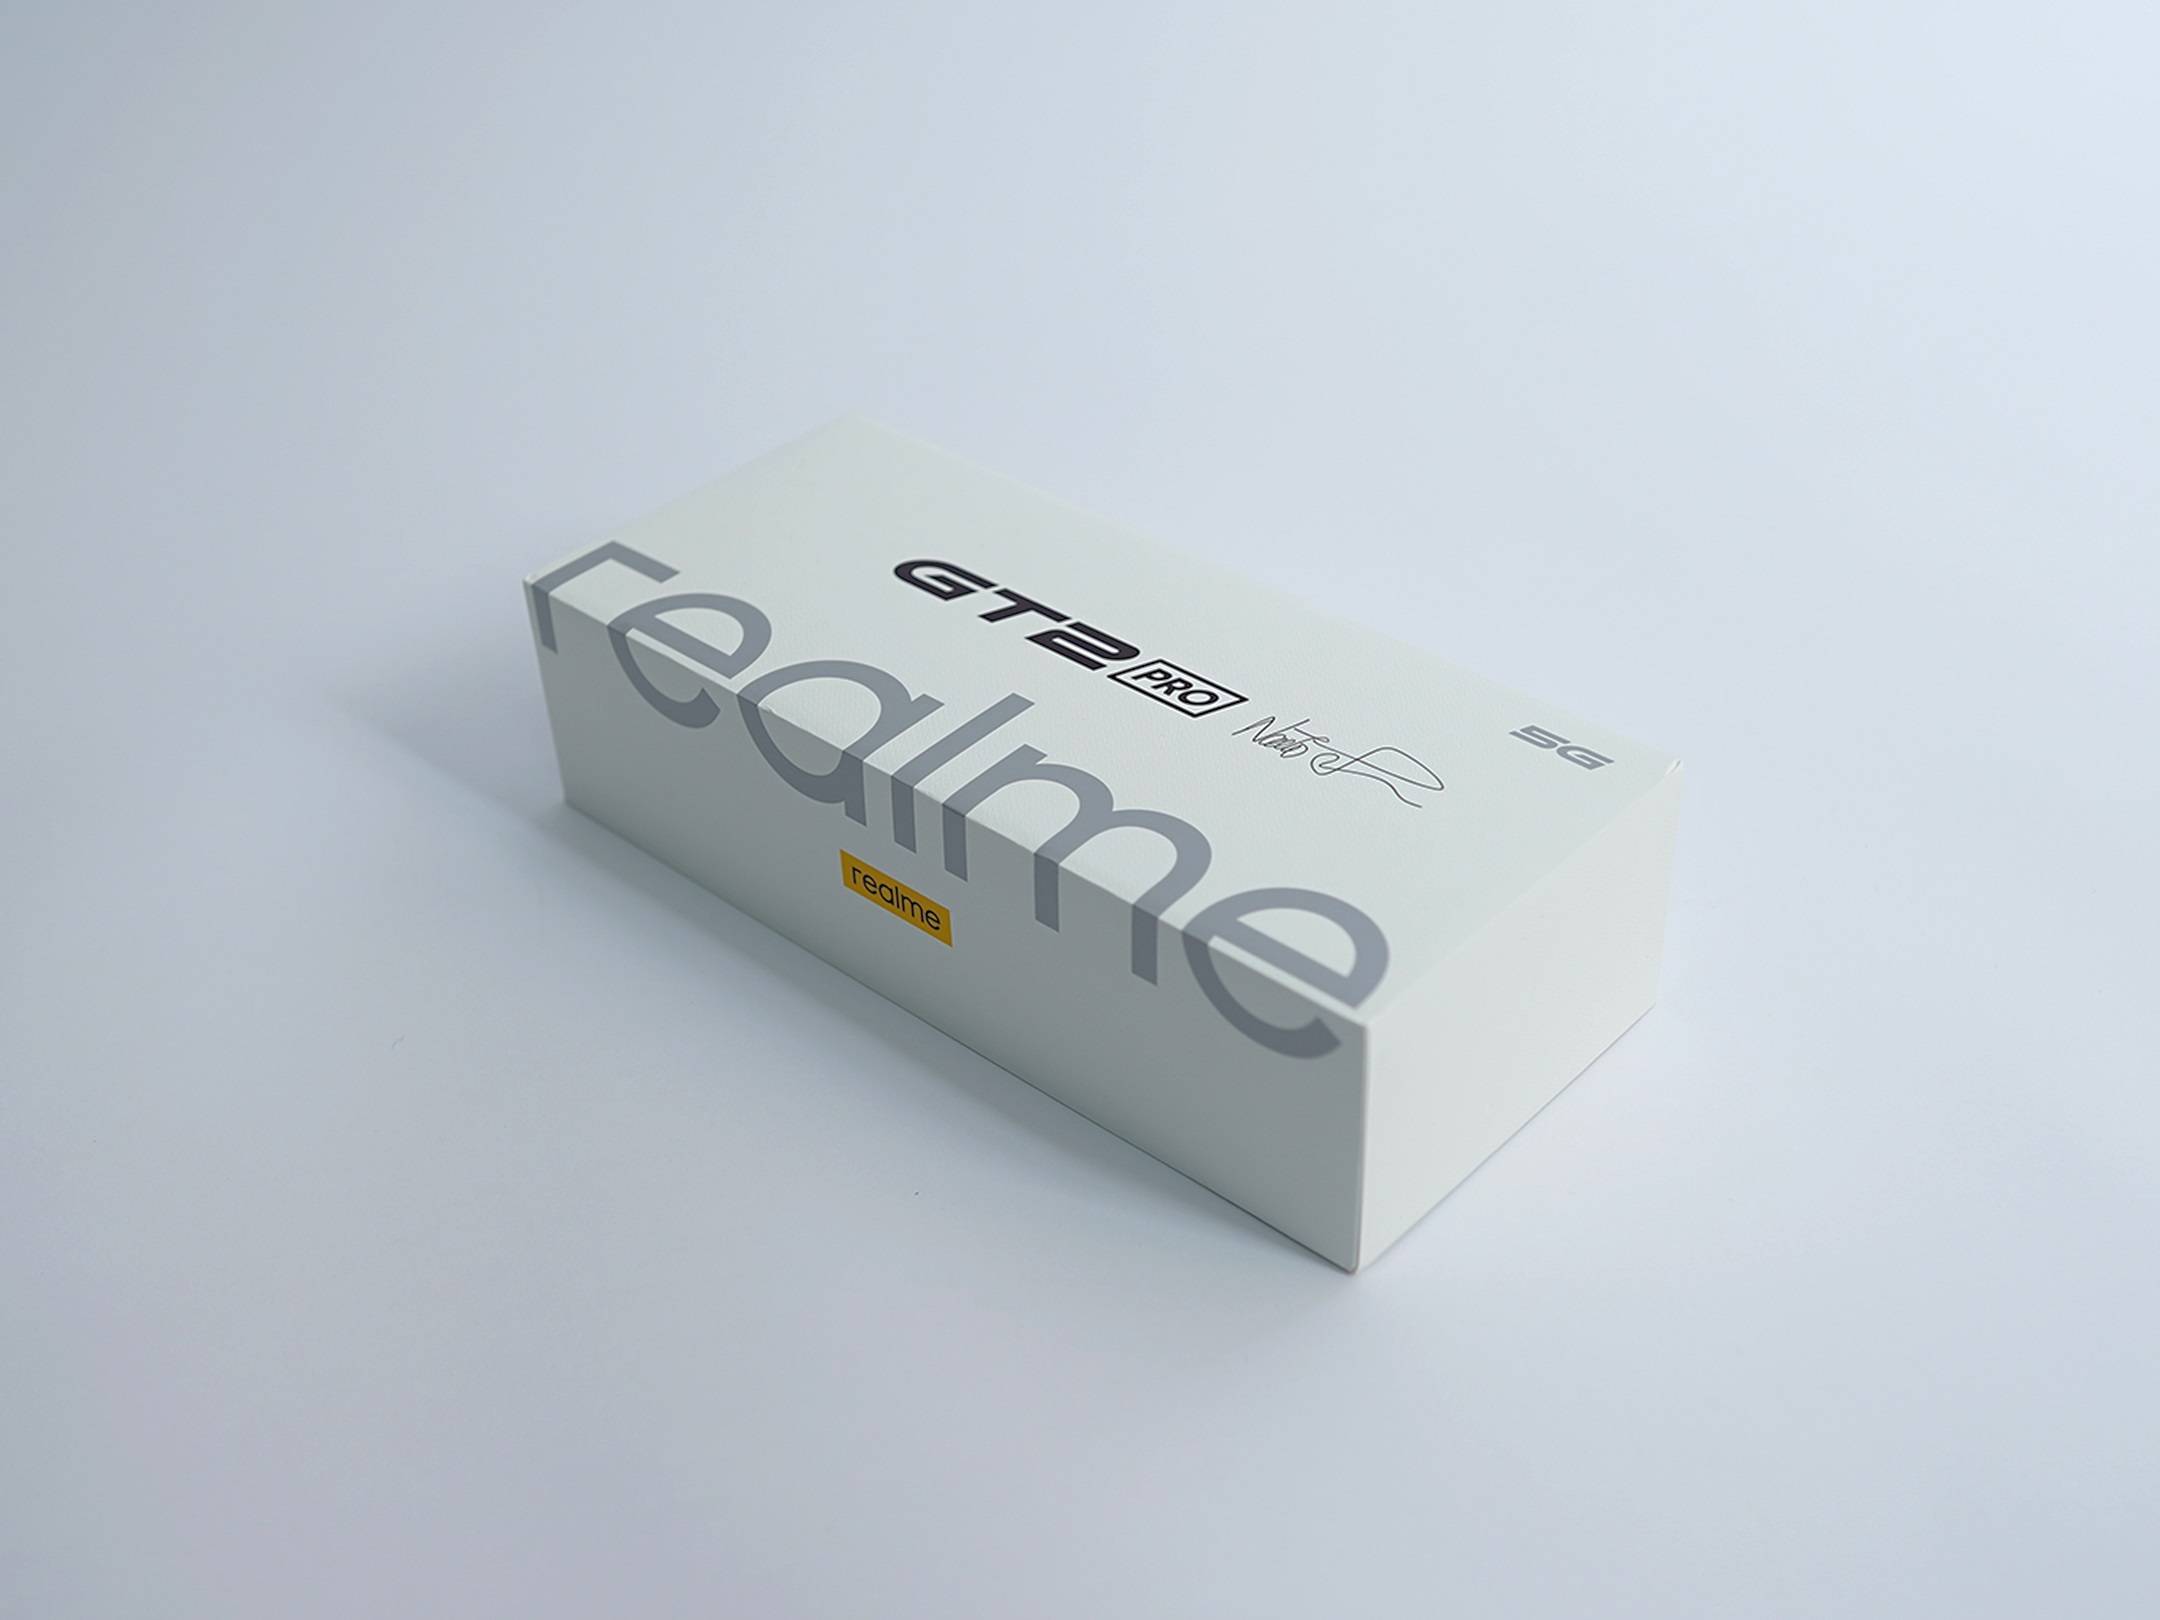 Membawa Pesan untuk Menjaga Kelestarian Bumi, Inilah Isi Kotak realme GT 2 Pro dengan Paper Tech Master Design